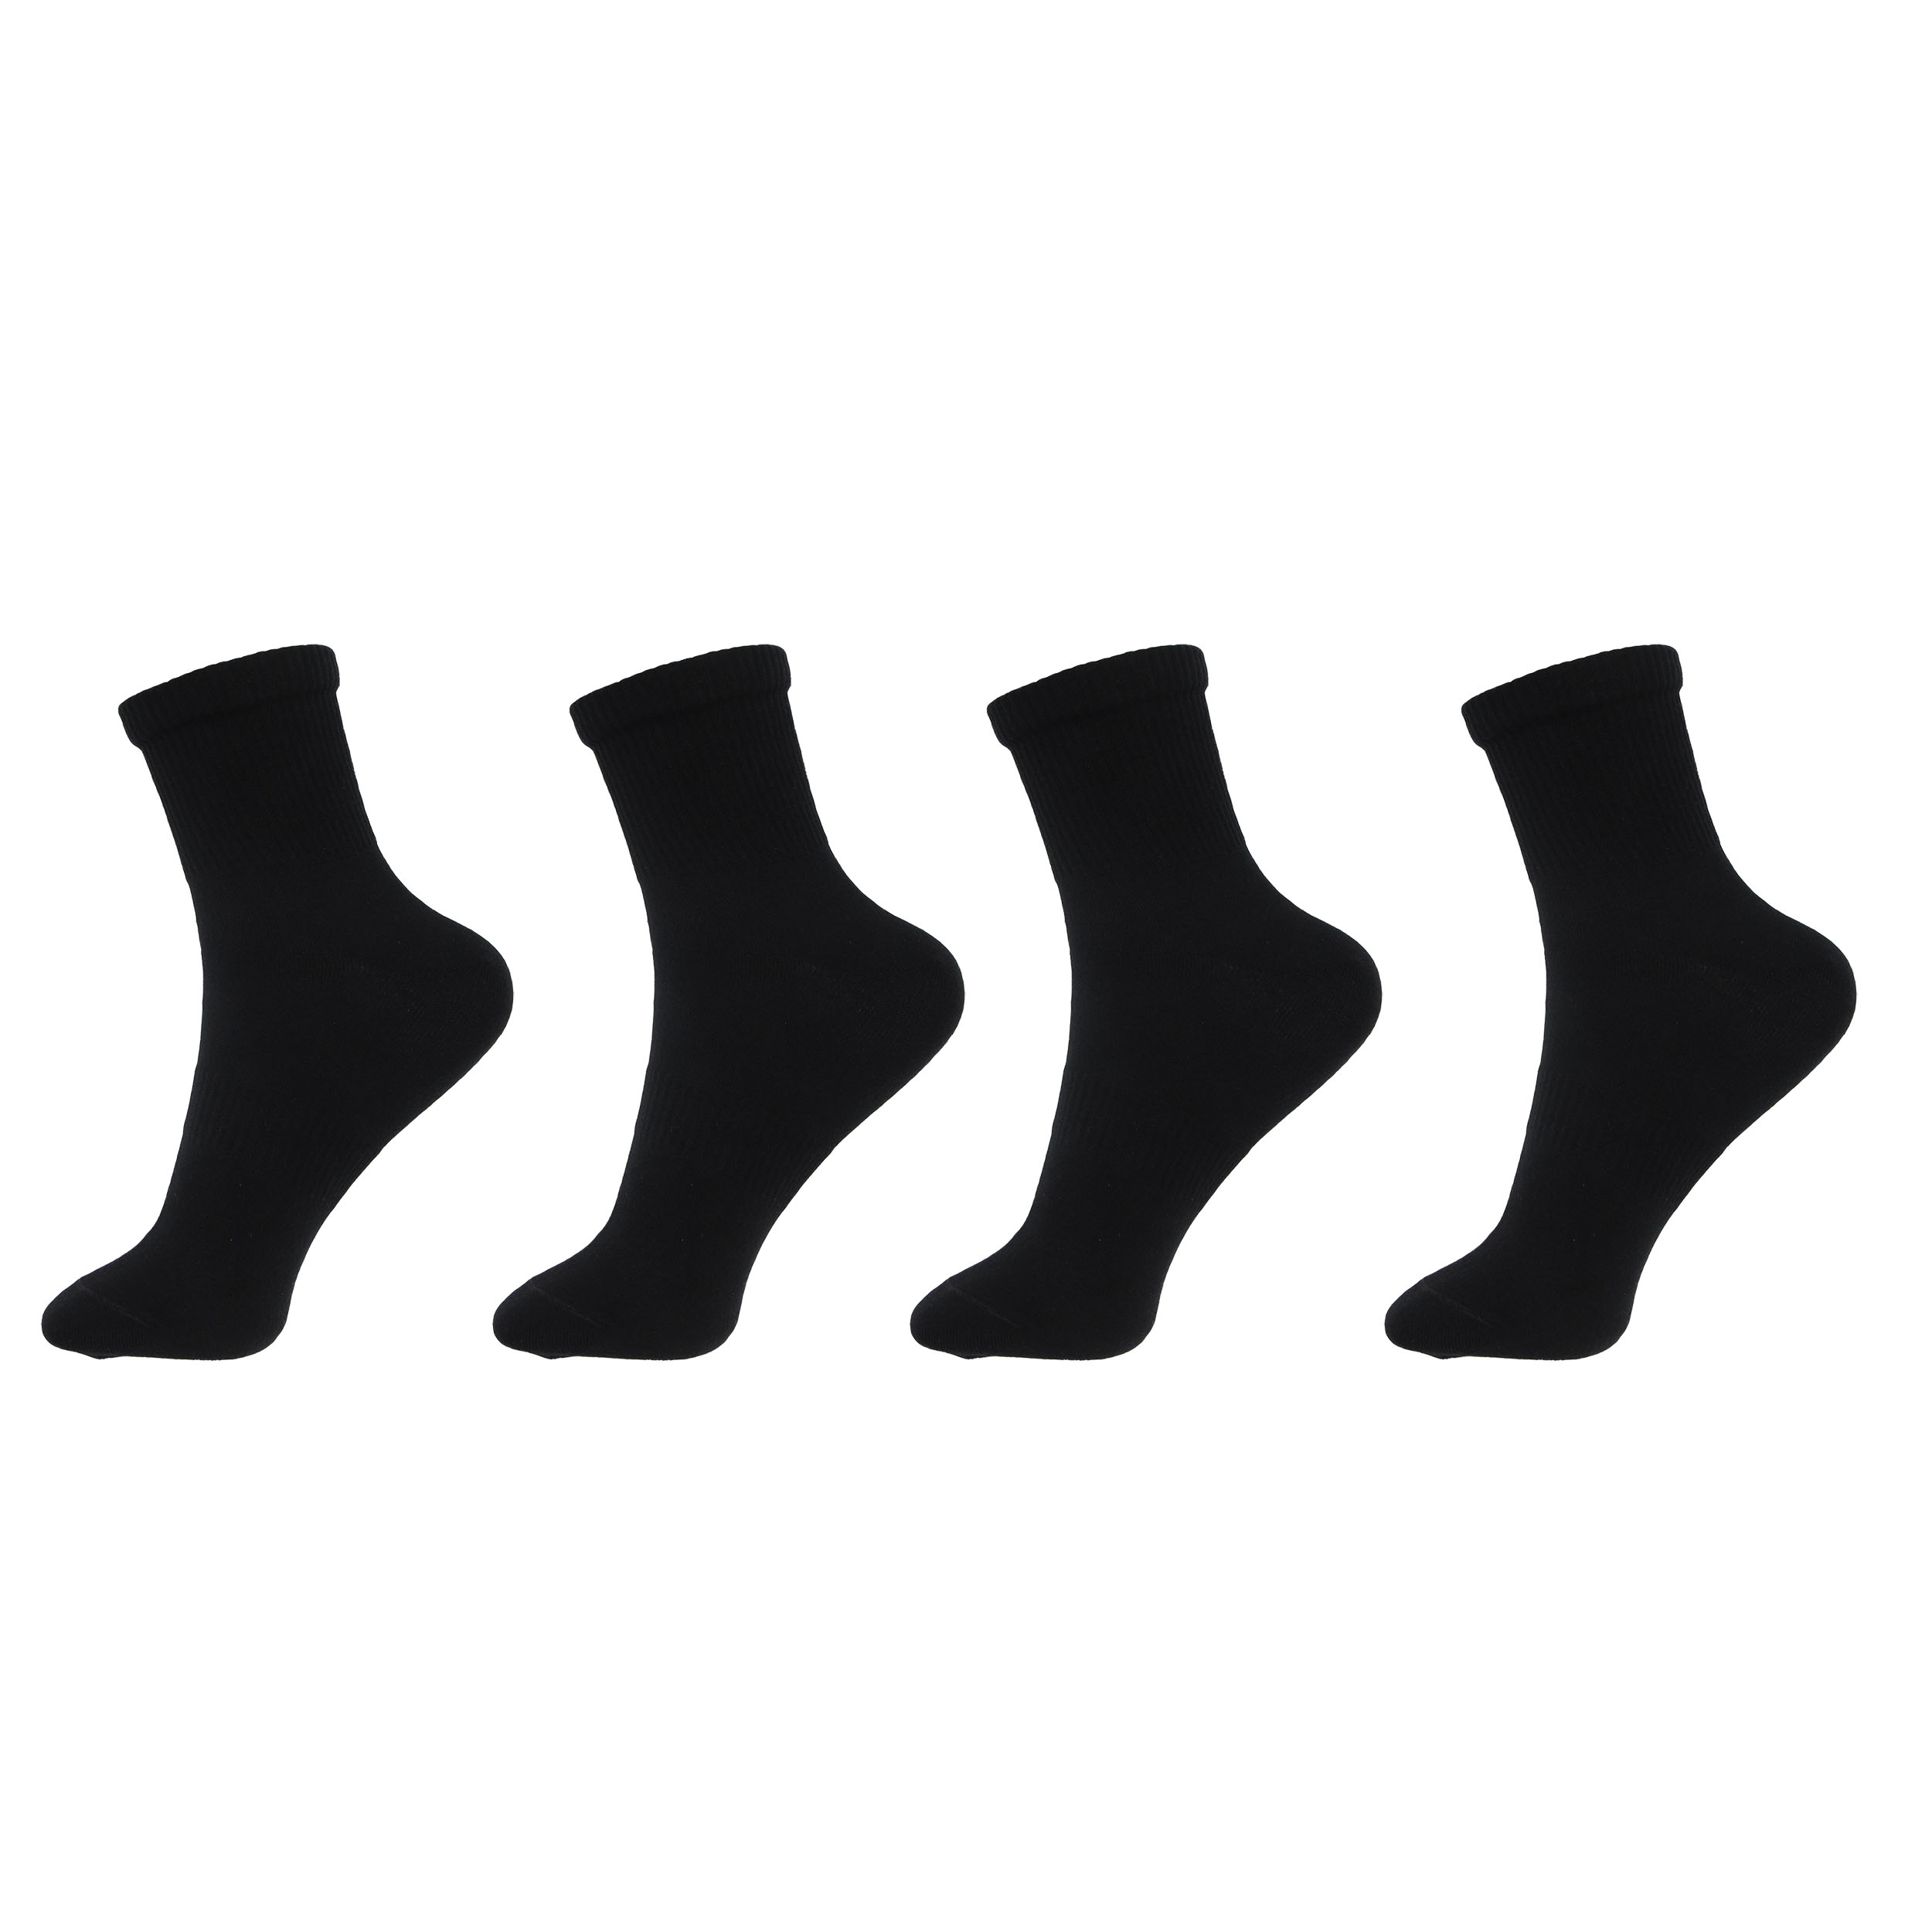 جوراب ورزشی مردانه ادیب مدل اسپرت کش انگلیسی کد MNSPT رنگ مشکی بسته 4 عددی